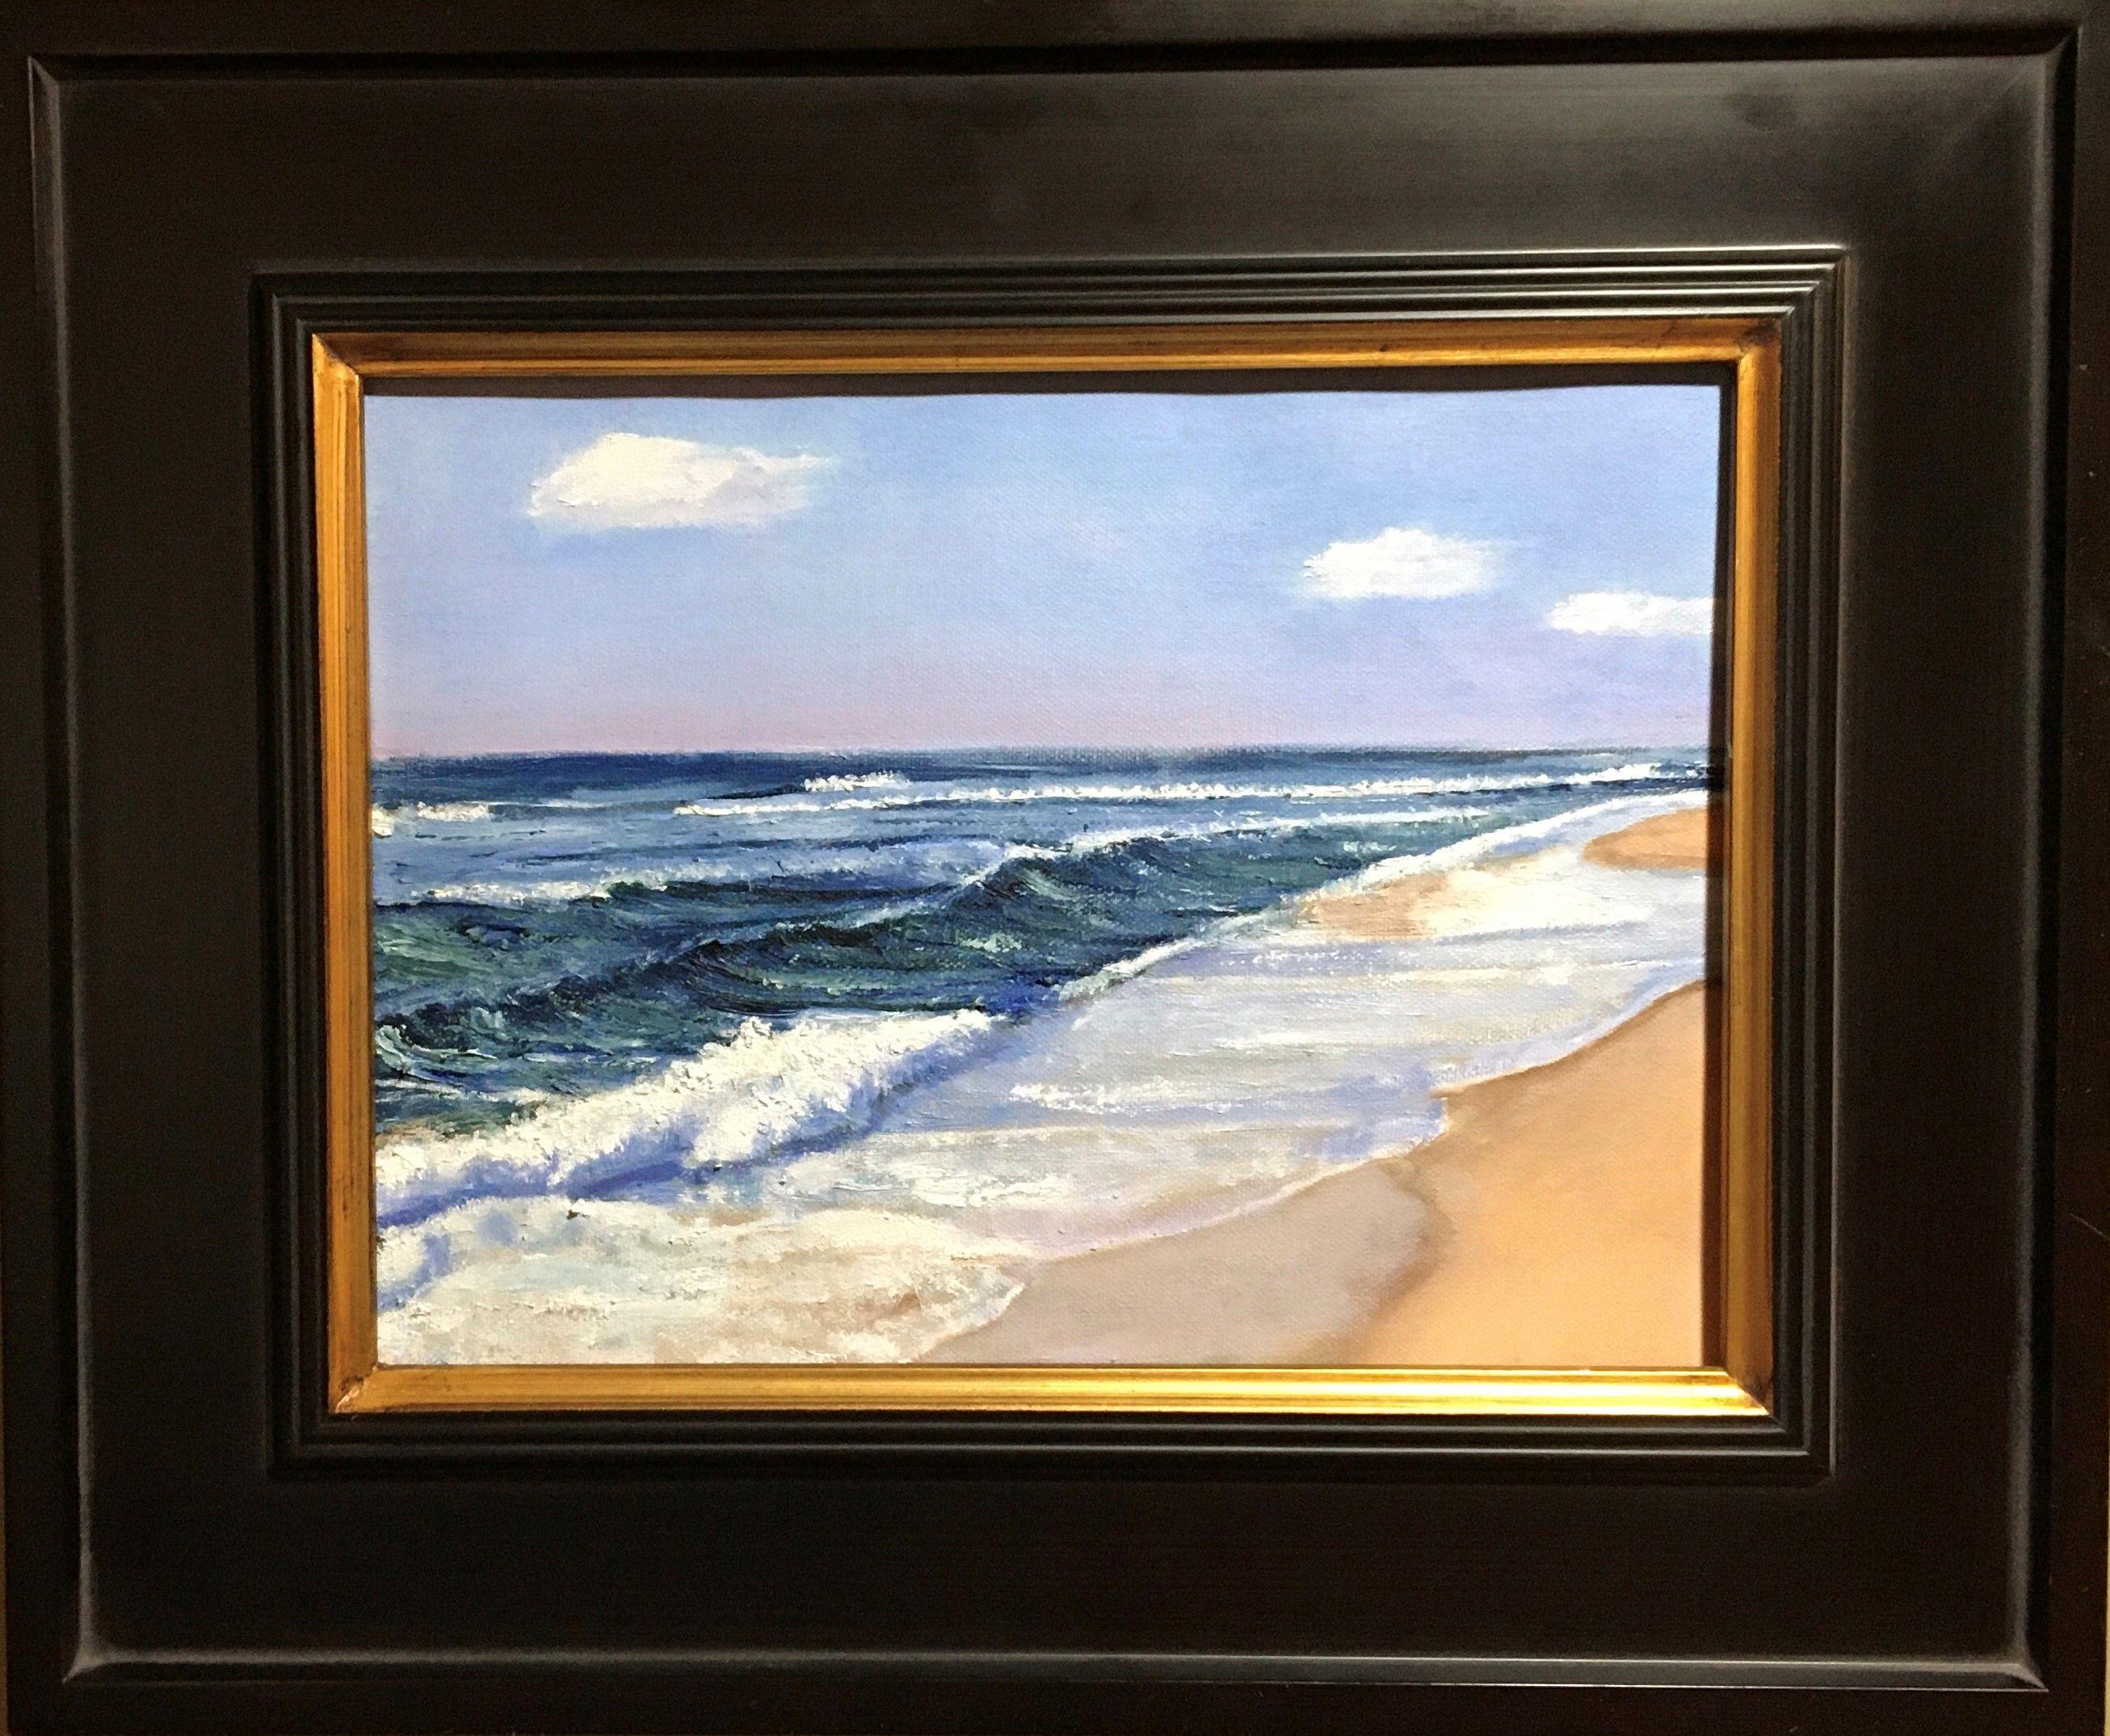 Étude de plage, peinture, huile sur toile - Réalisme Painting par Mark Hunter